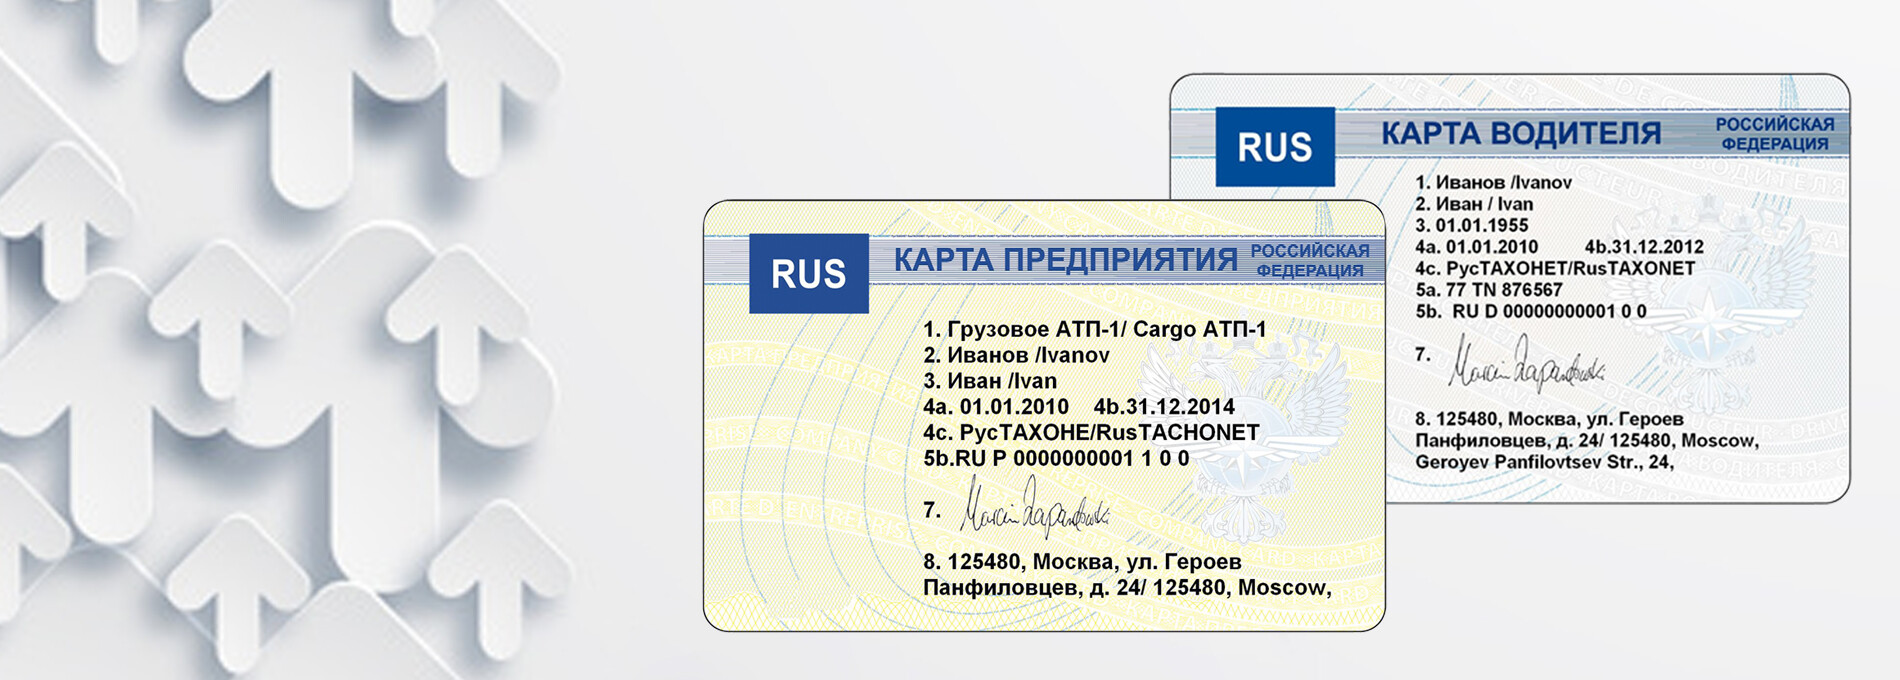 Карта водителя россия. Карта водителя. Пластиковая карта водителя. Карта водителя для тахографа. Карта водителя тахограф.